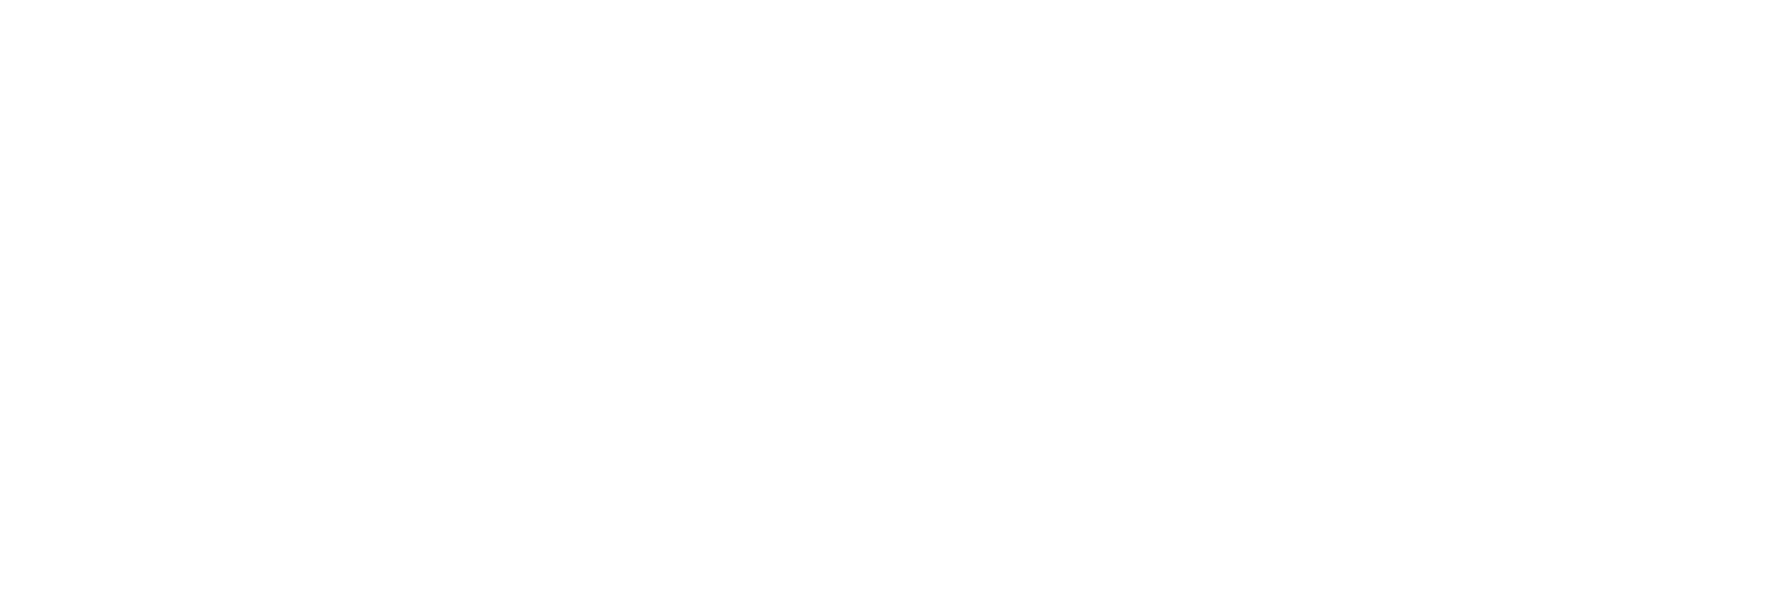 Transcending Horizons Logo